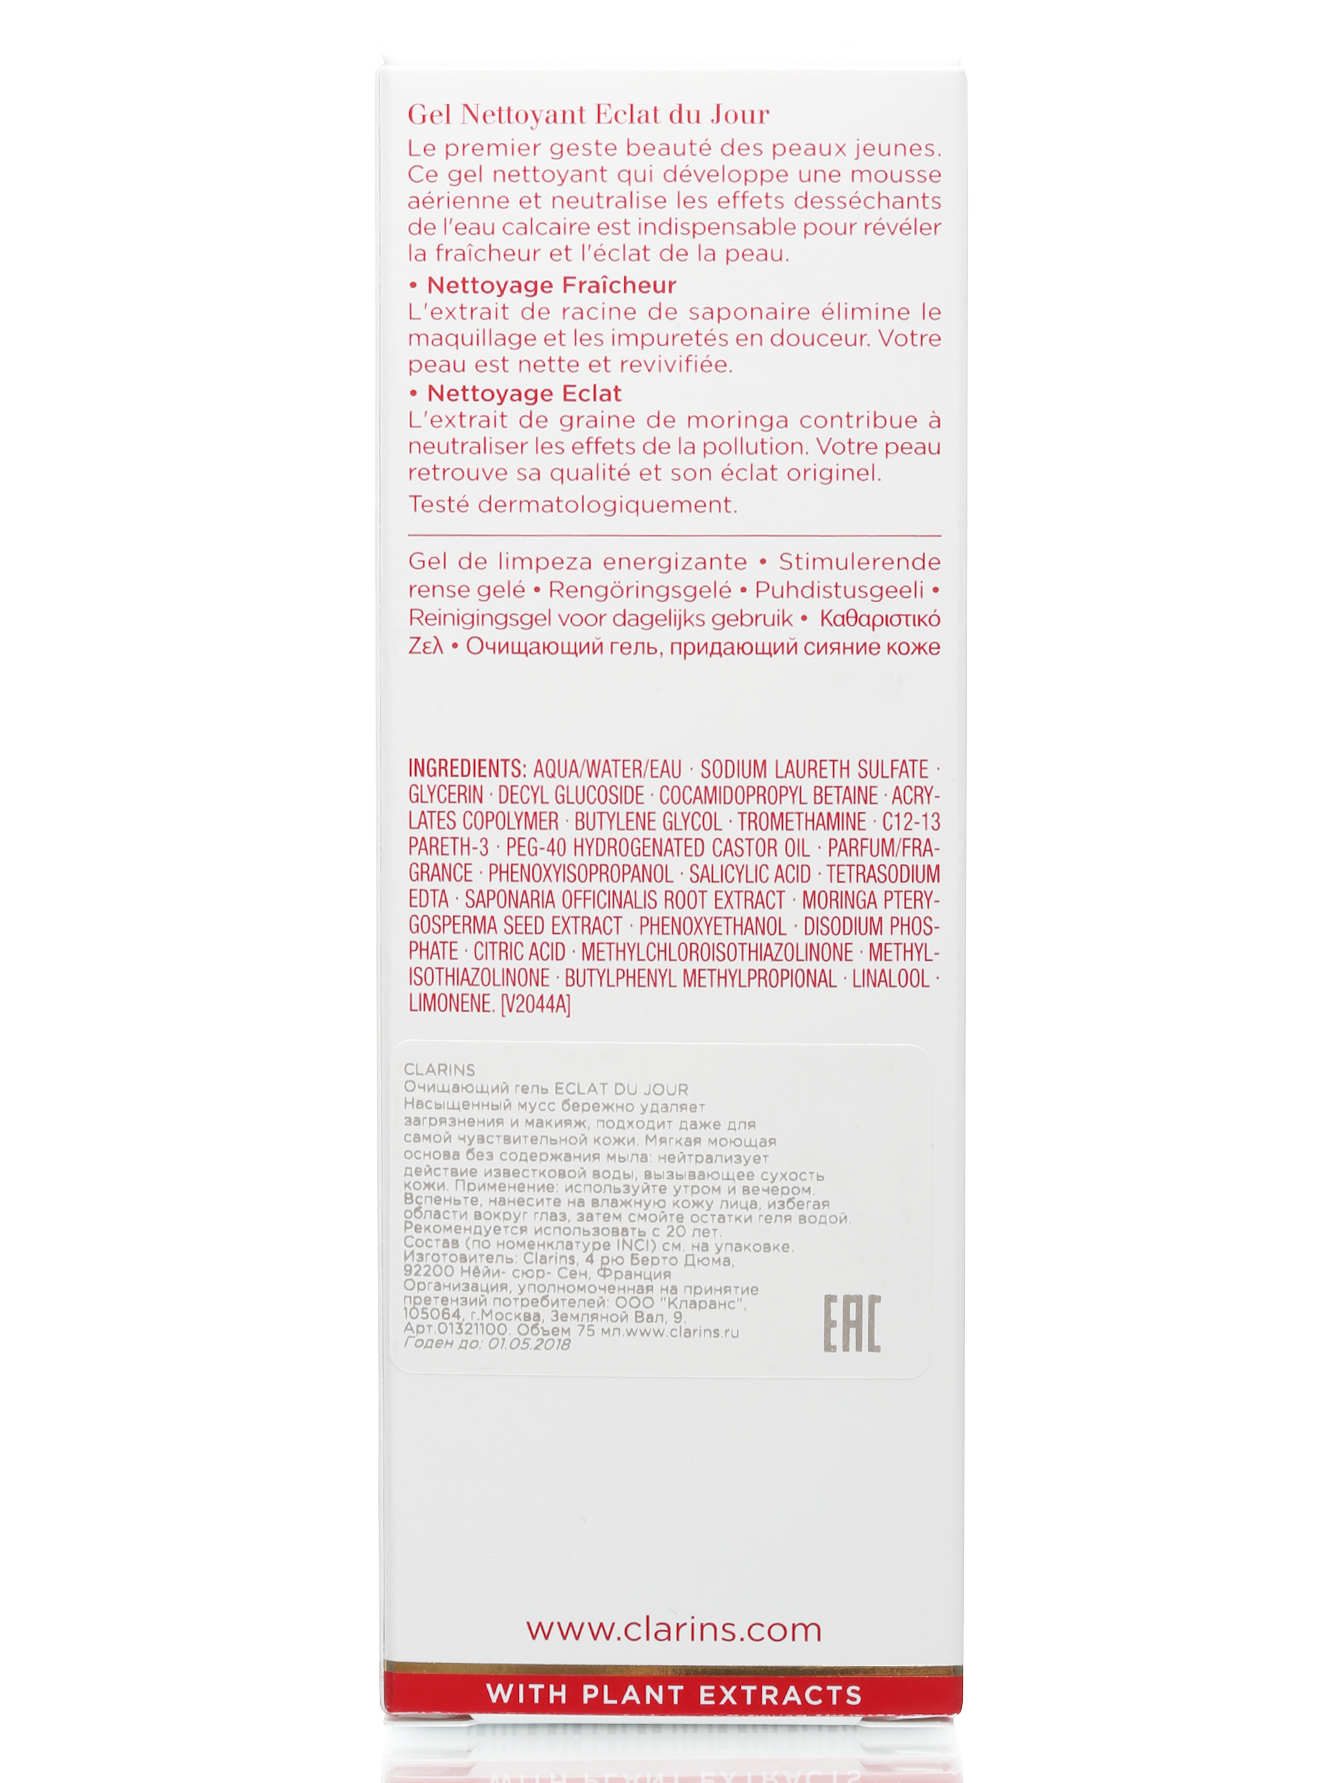 Очищающий гель, придающий сияние коже - Eclat du Jour, 75ml - Модель Верх-Низ